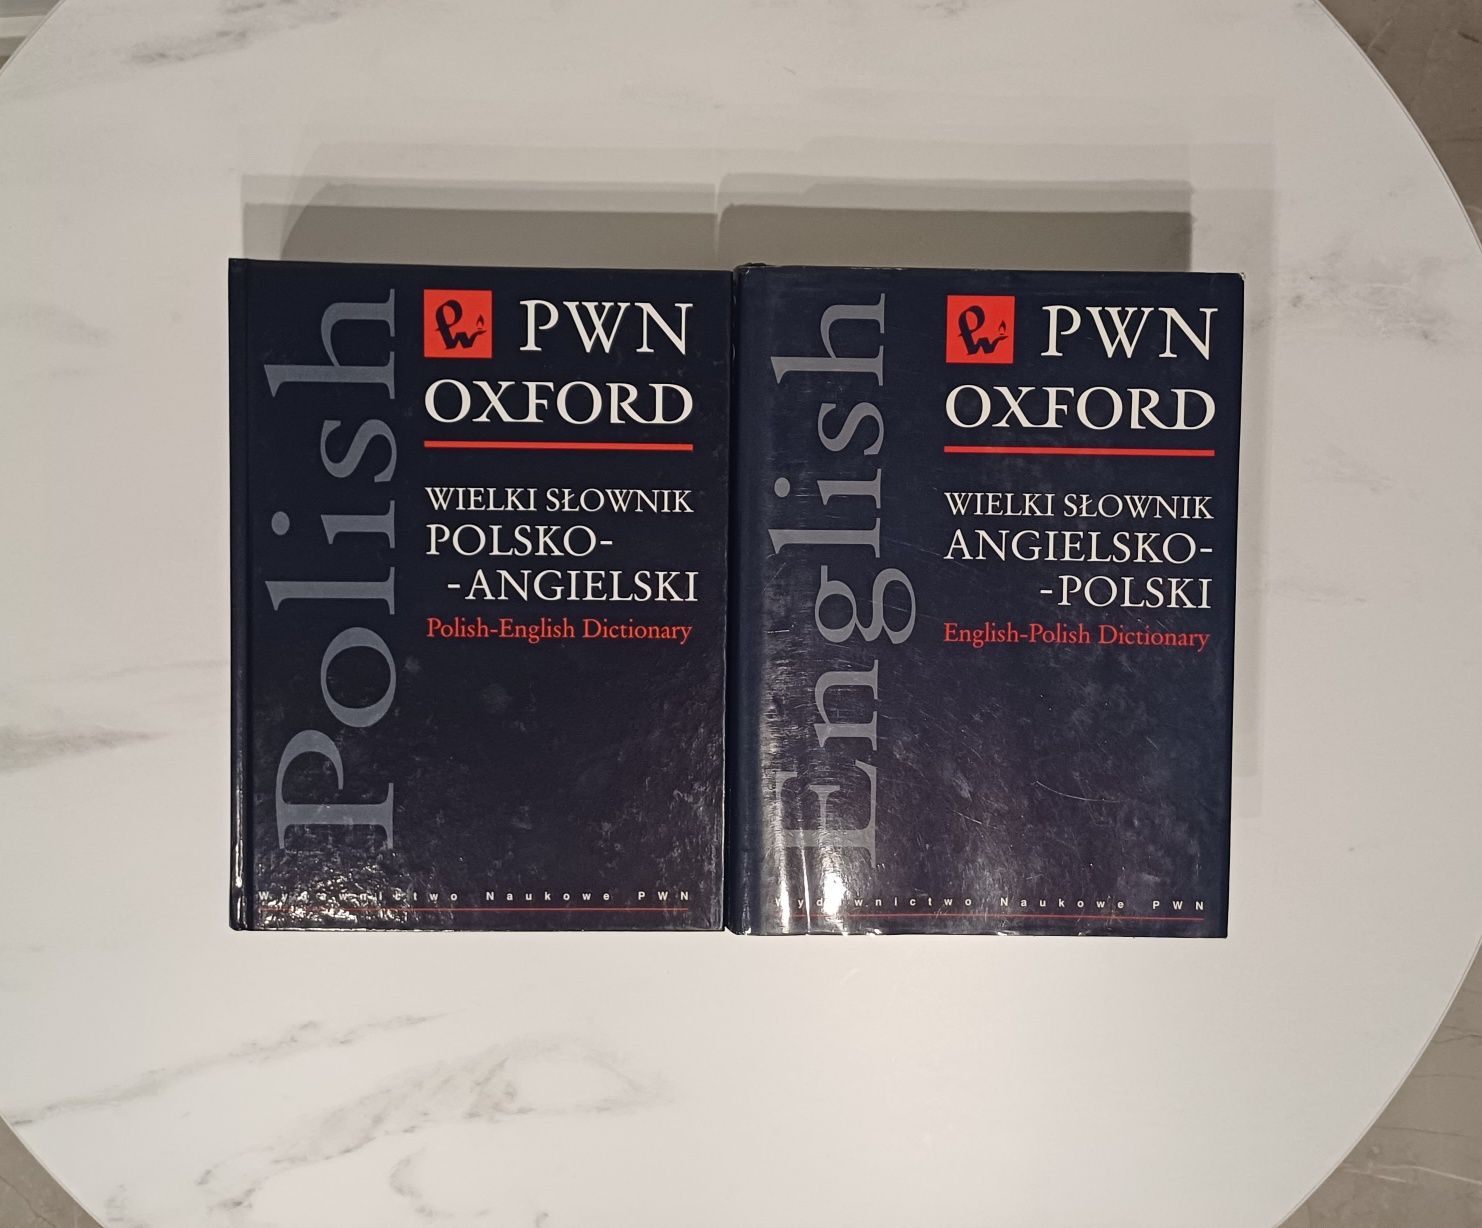 Słownik PWN OXFORD polsko-angielski, angielsko-polski -komplet używane